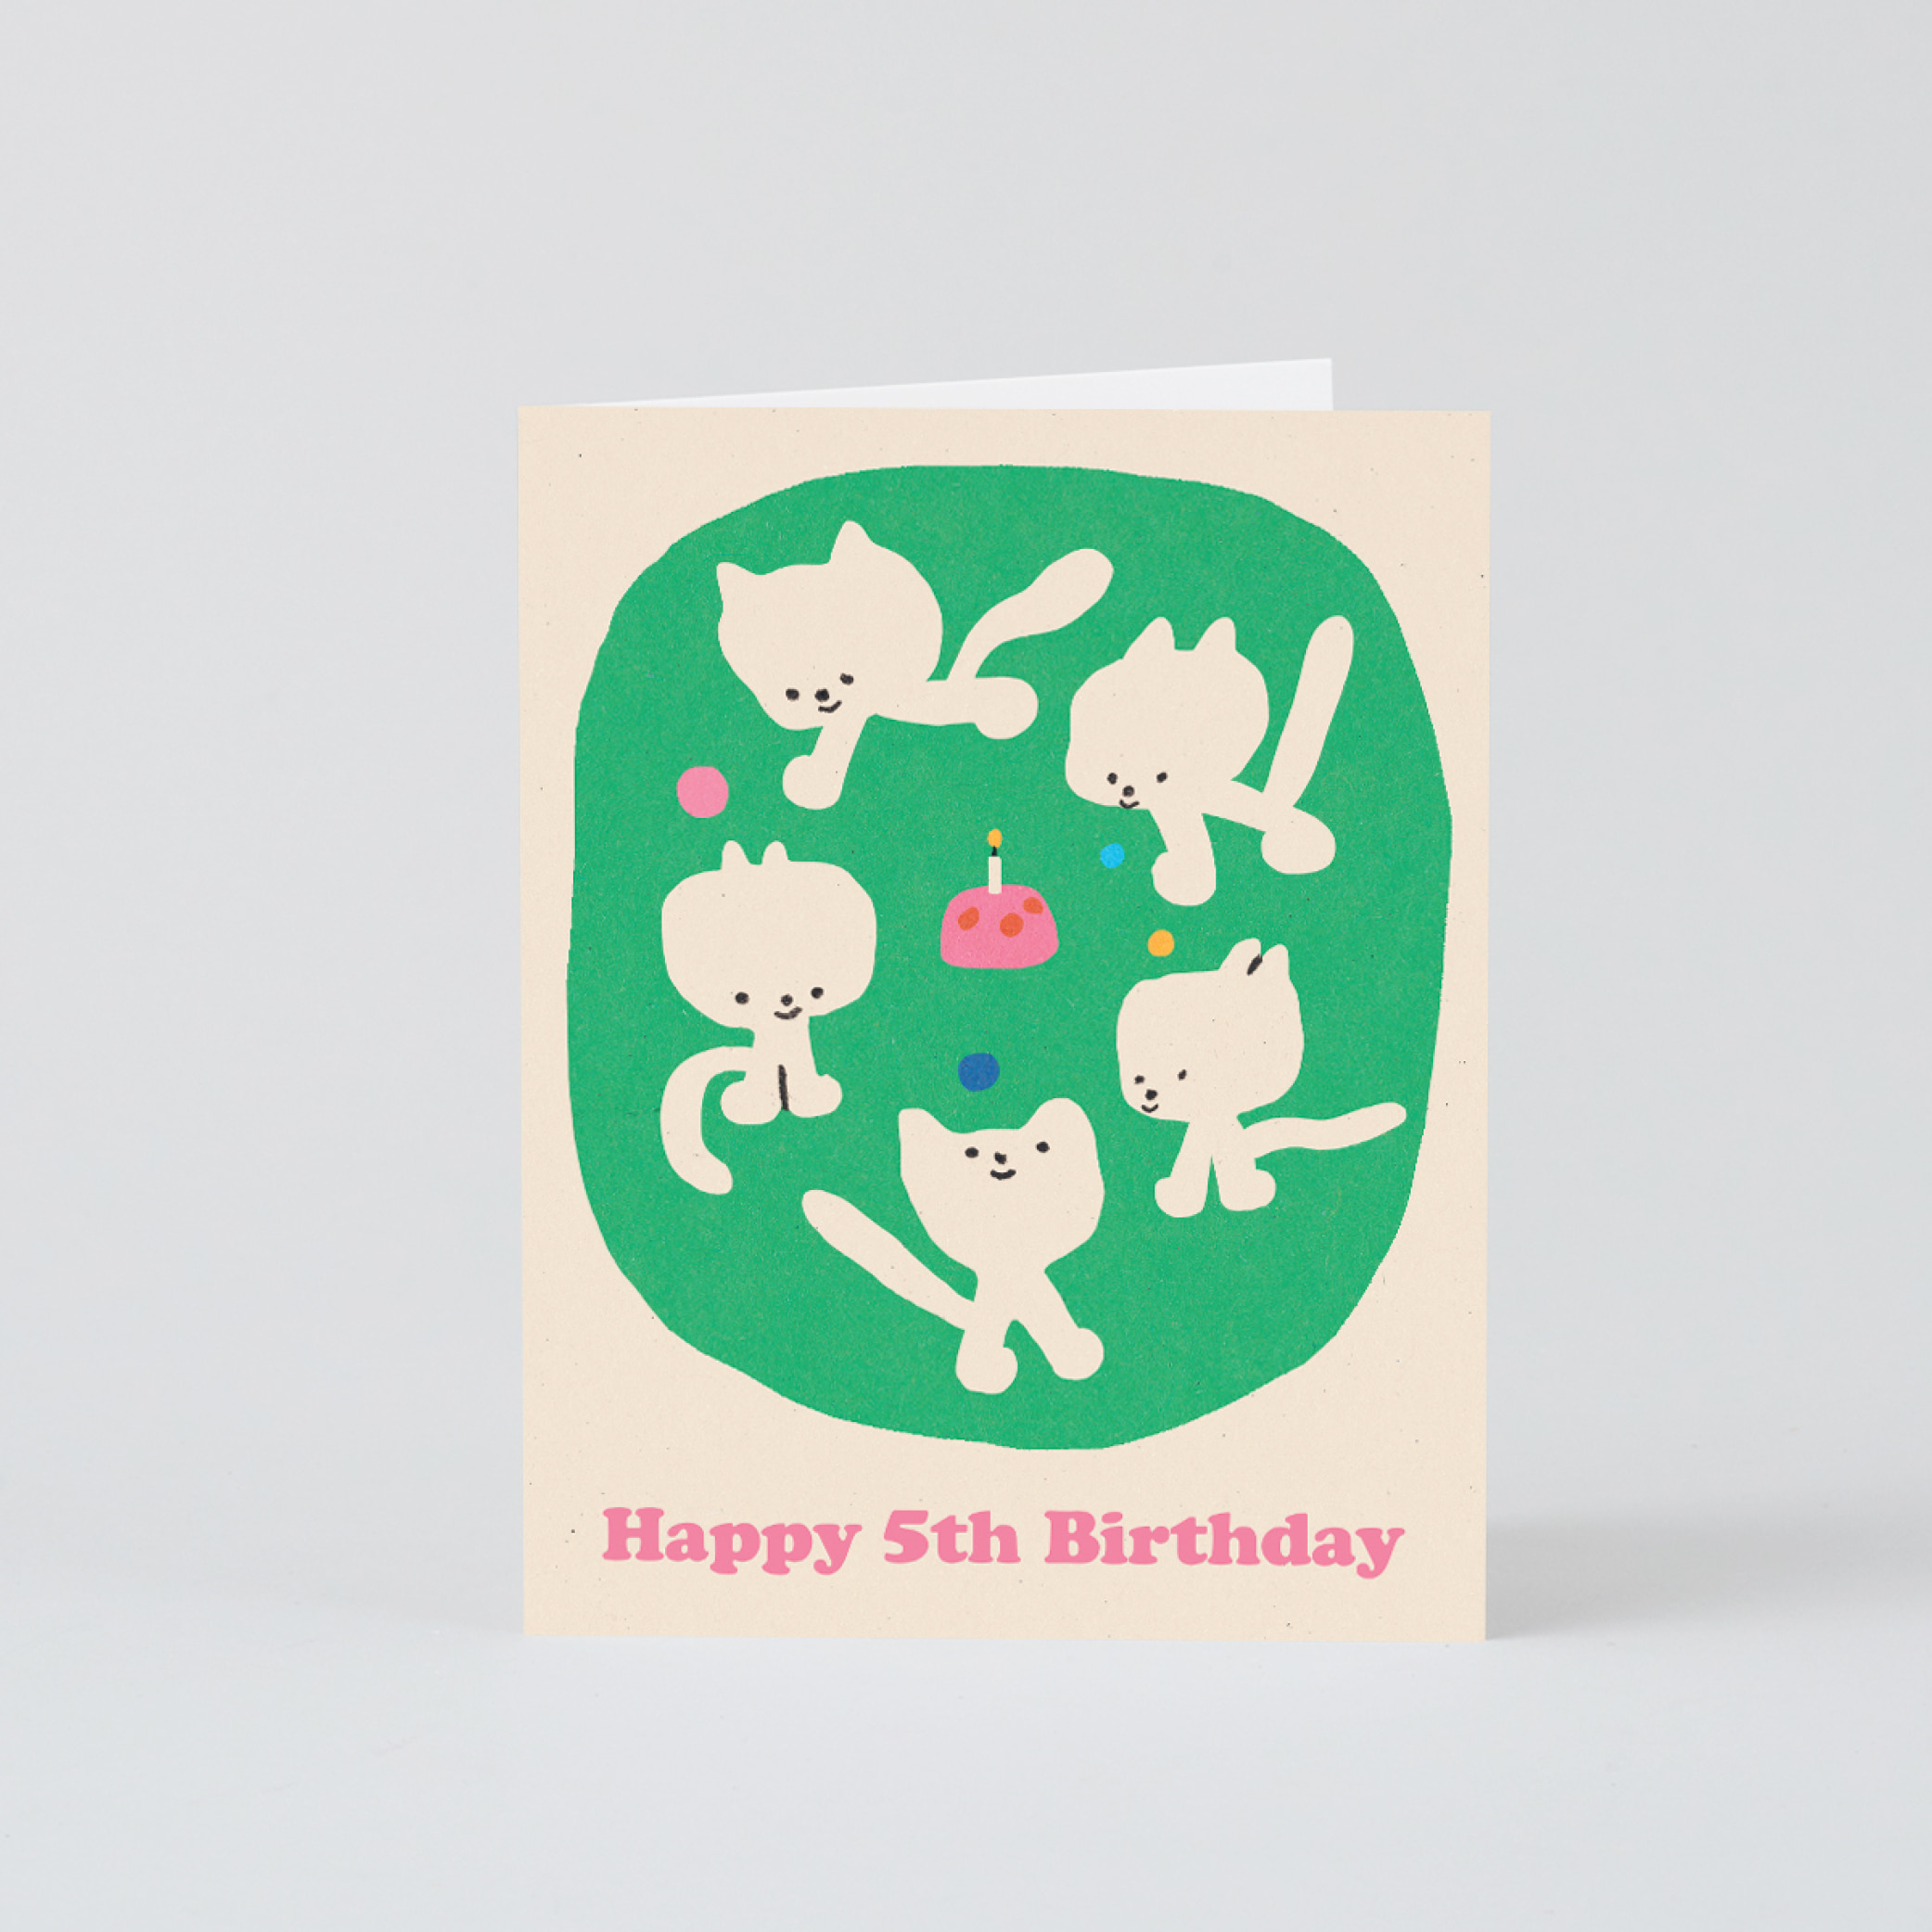 [WRAP] Happy 5th Birthday Card